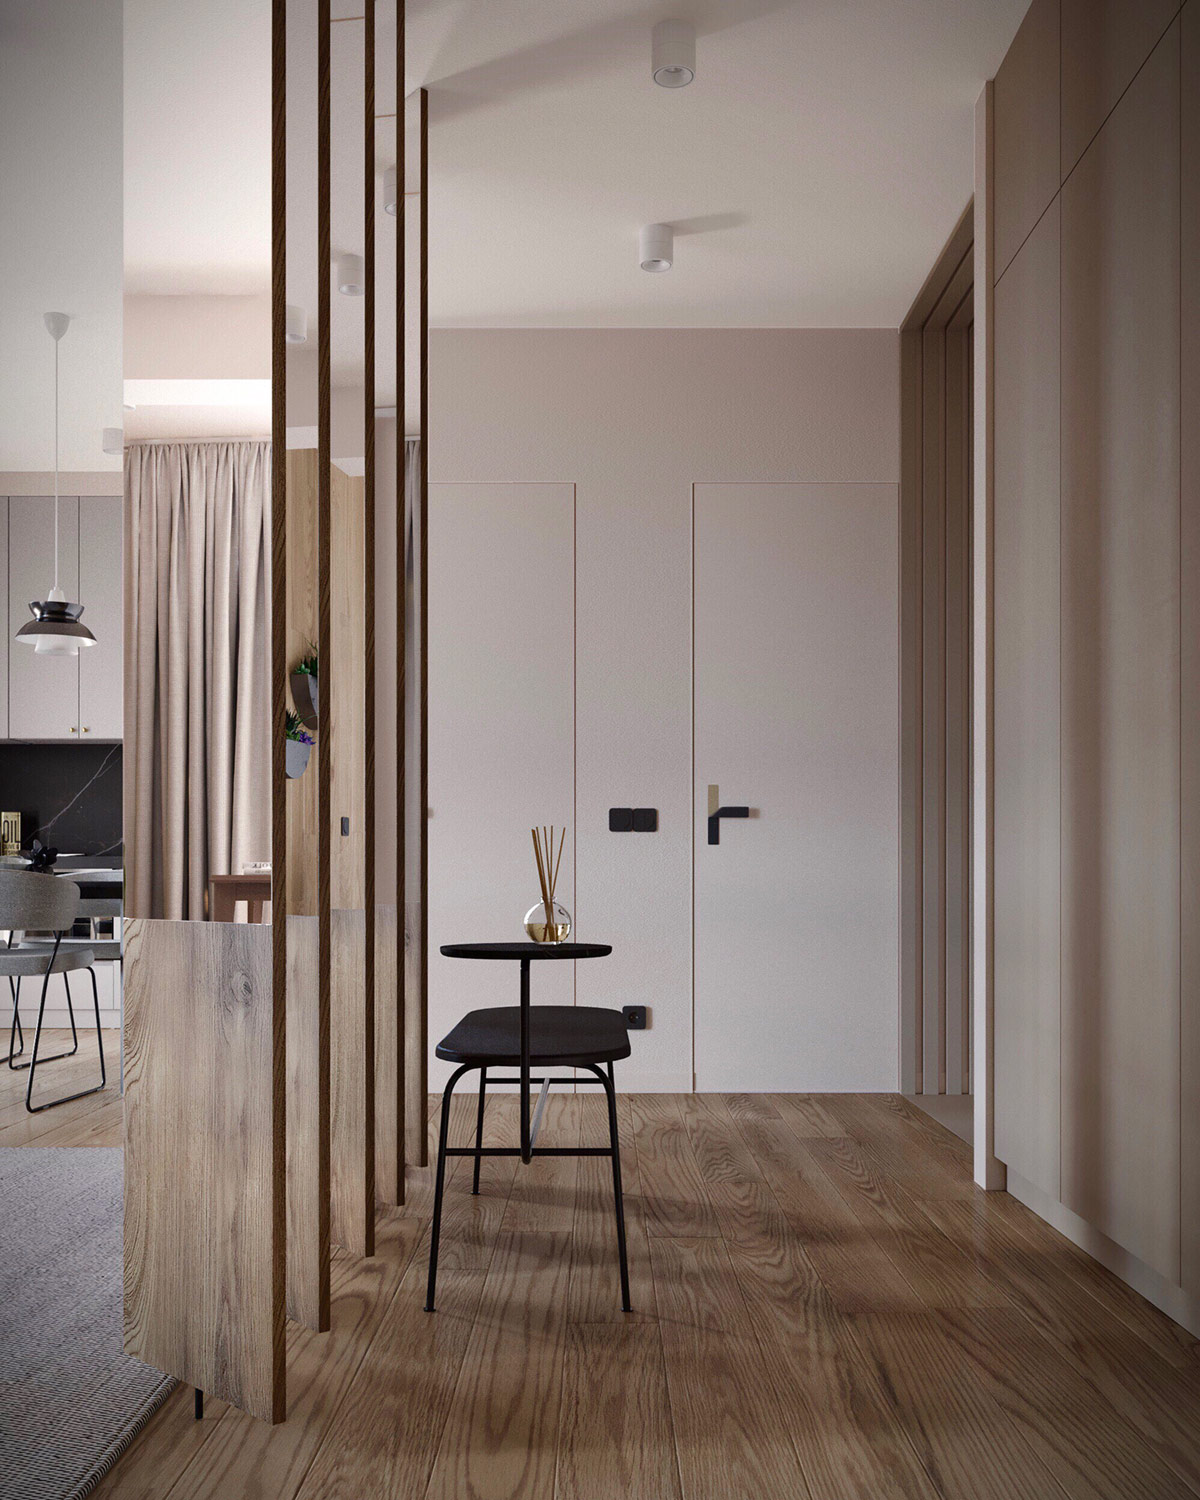 Kiến trúc sư thiết kế căn hộ với vách ngăn xoay độc đáo, phần trên của vách ngăn ốp gương, phản chiếu không gian, hút sáng tự nhiên nhằm tạo cảm giác rộng rãi hơn cho căn hộ nhỏ.